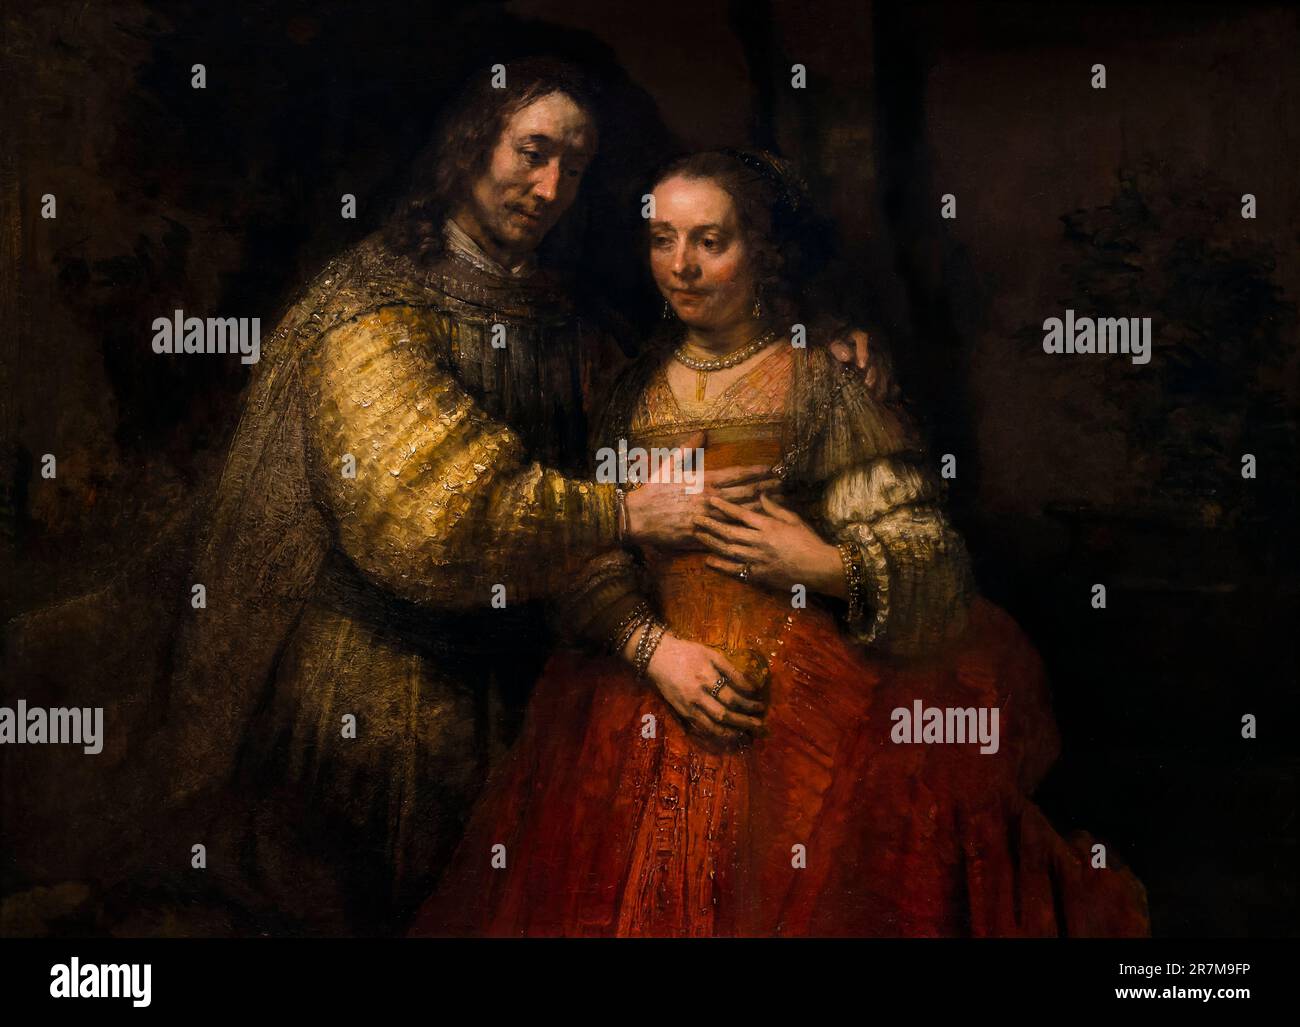 La Novia Judía, Isaac y Rebecca, Rembrandt, circa 1665-9, Rijksmuseum, Amsterdam, Países Bajos, Europa, Foto de stock